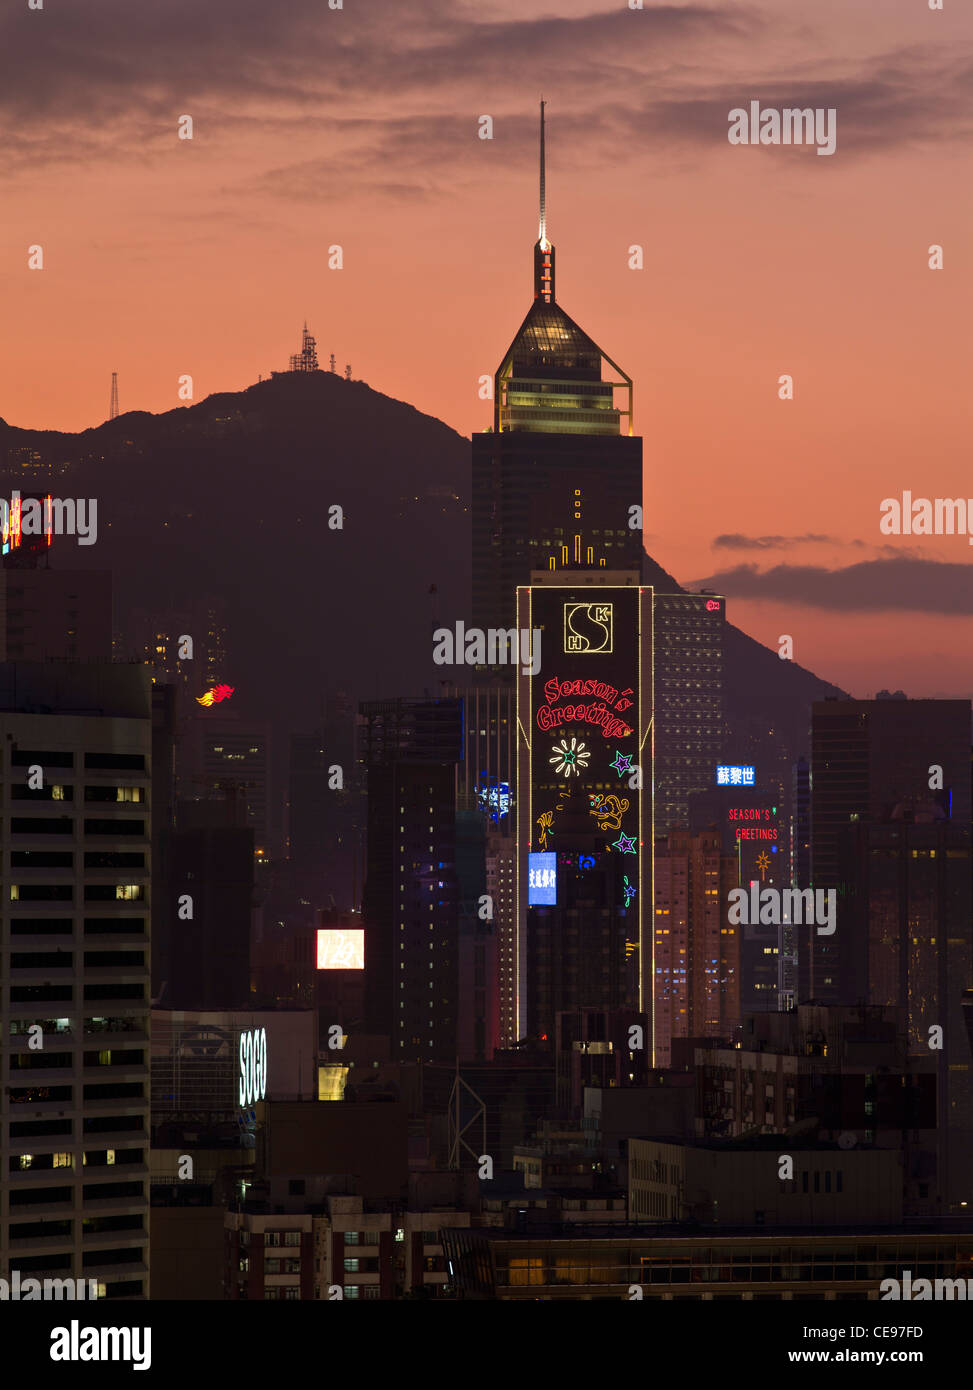 Dh Central Plaza Tower Wan Chai, Hong Kong nuit lumières Pic Victoria sunset skyline bâtiment crépuscule Banque D'Images